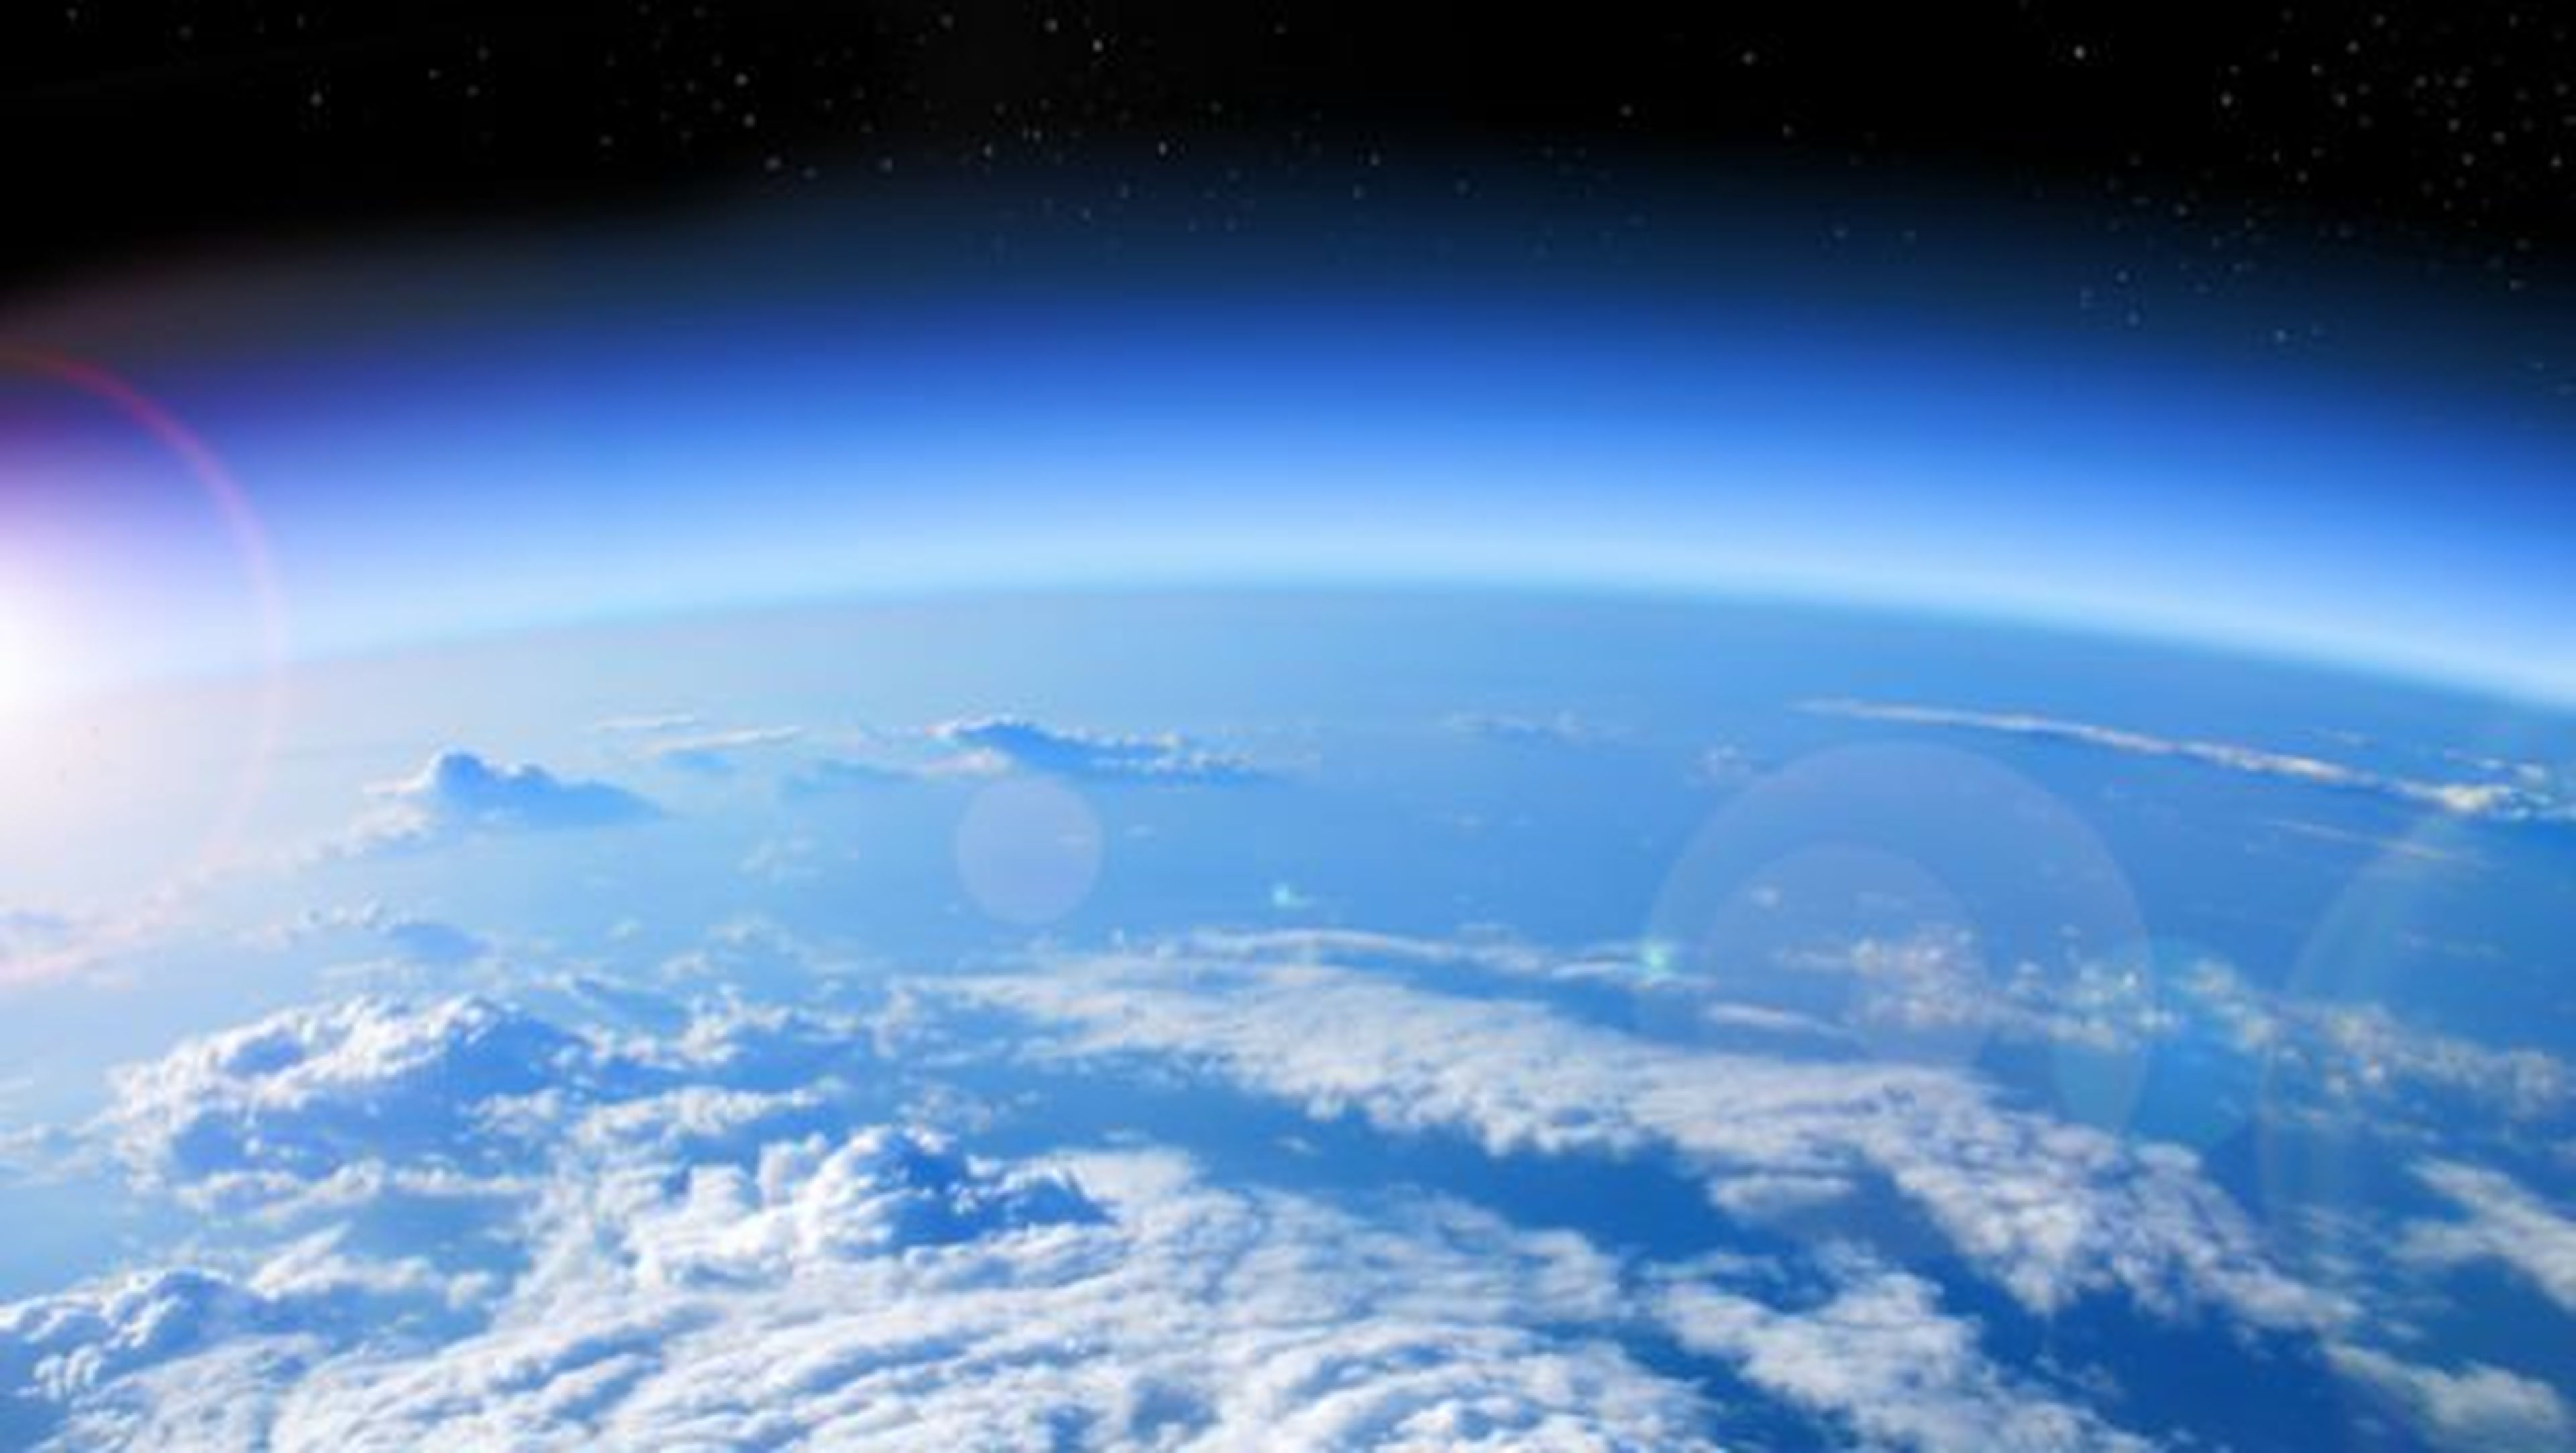 Capa de ozono reducción niveles para 2070